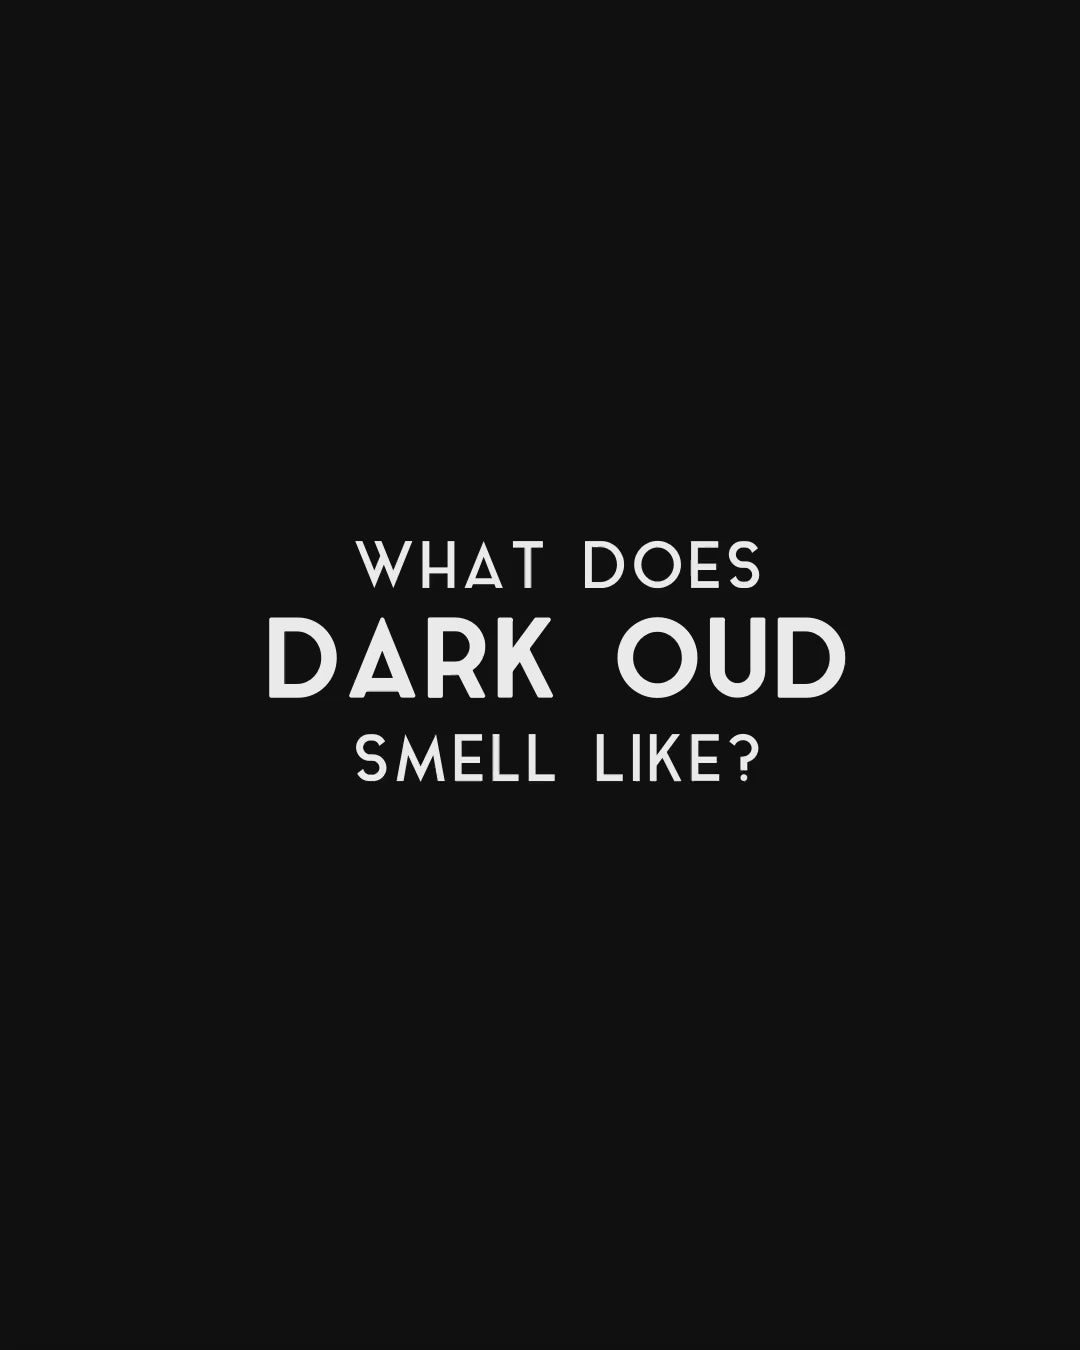 Dark Oud